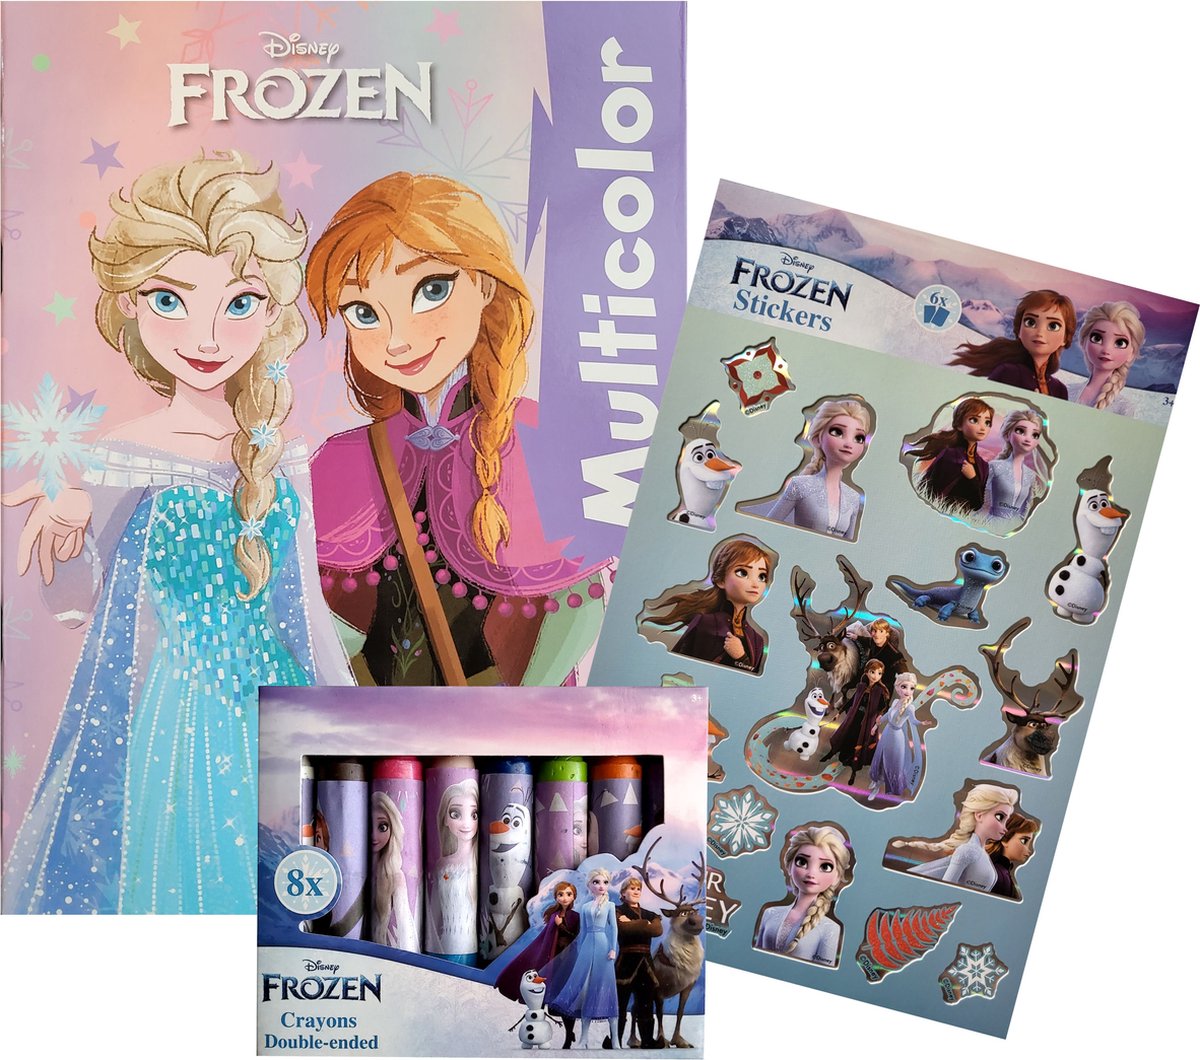 Disney Frozen - Kleurboek 32 pagina's waarvan 17 kleurplaten en 17 gekleurde illustraties - 6 vellen met stickers - 8 x dubbelpunt waskrijt - Violet - kerst - cadeau - kado